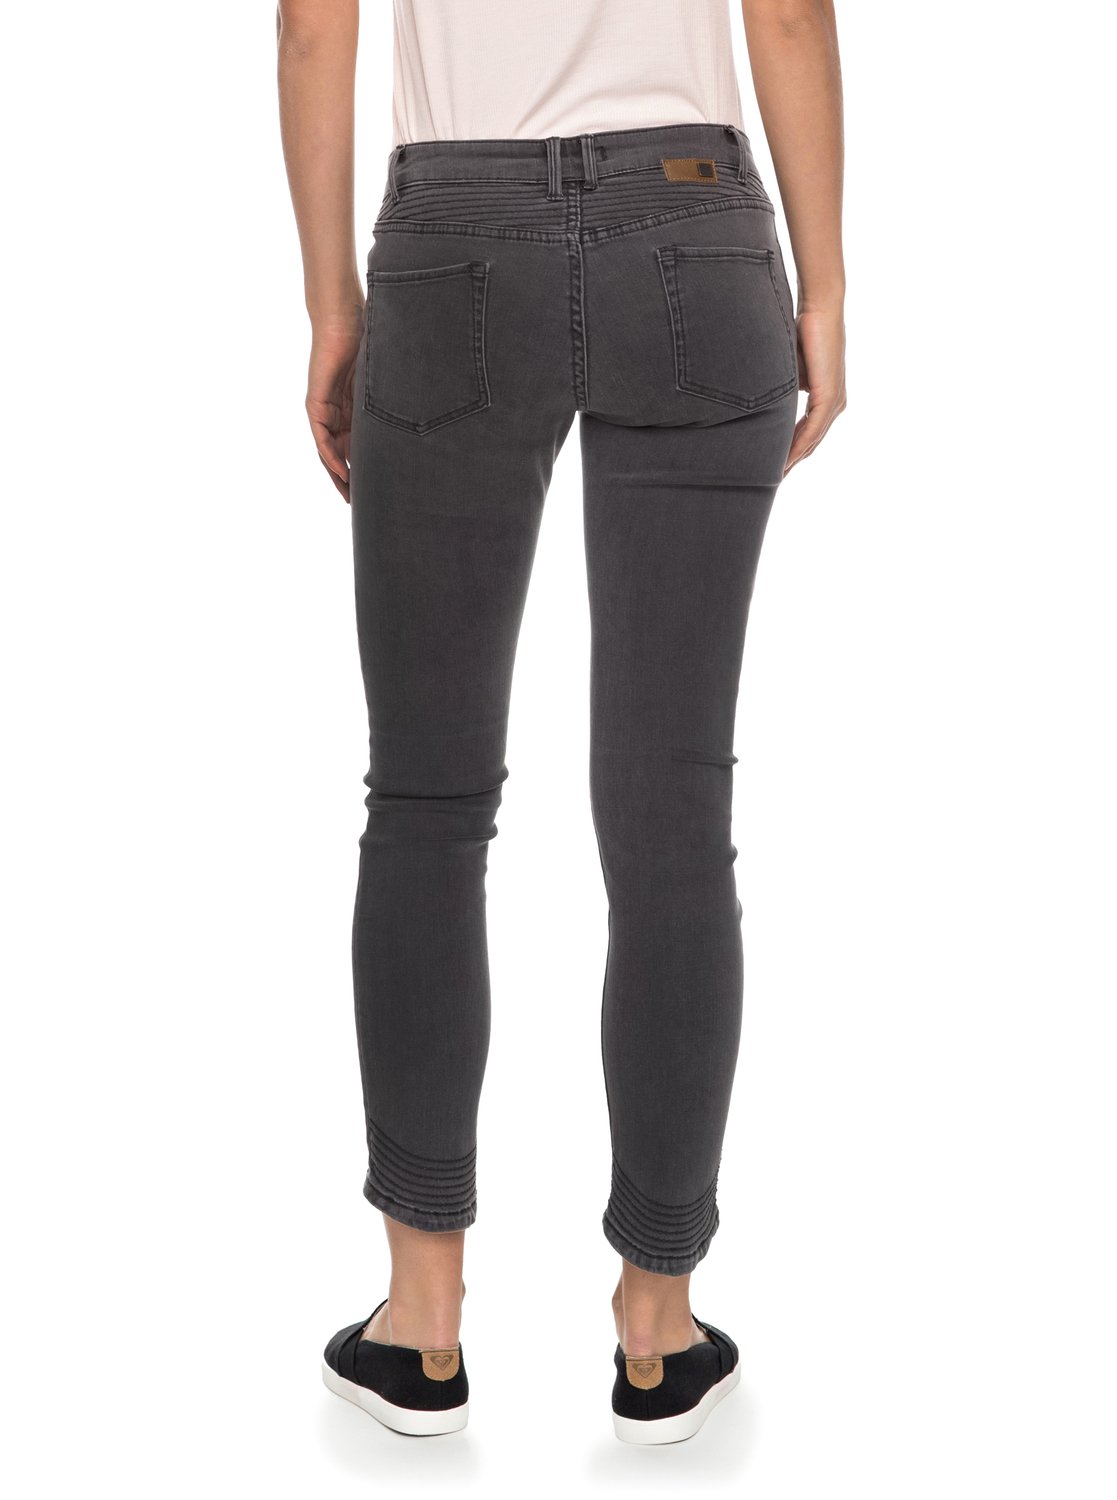 Suntrippers D Ankle Length Skinny Fit Jeans ERJDP03169 | Roxy